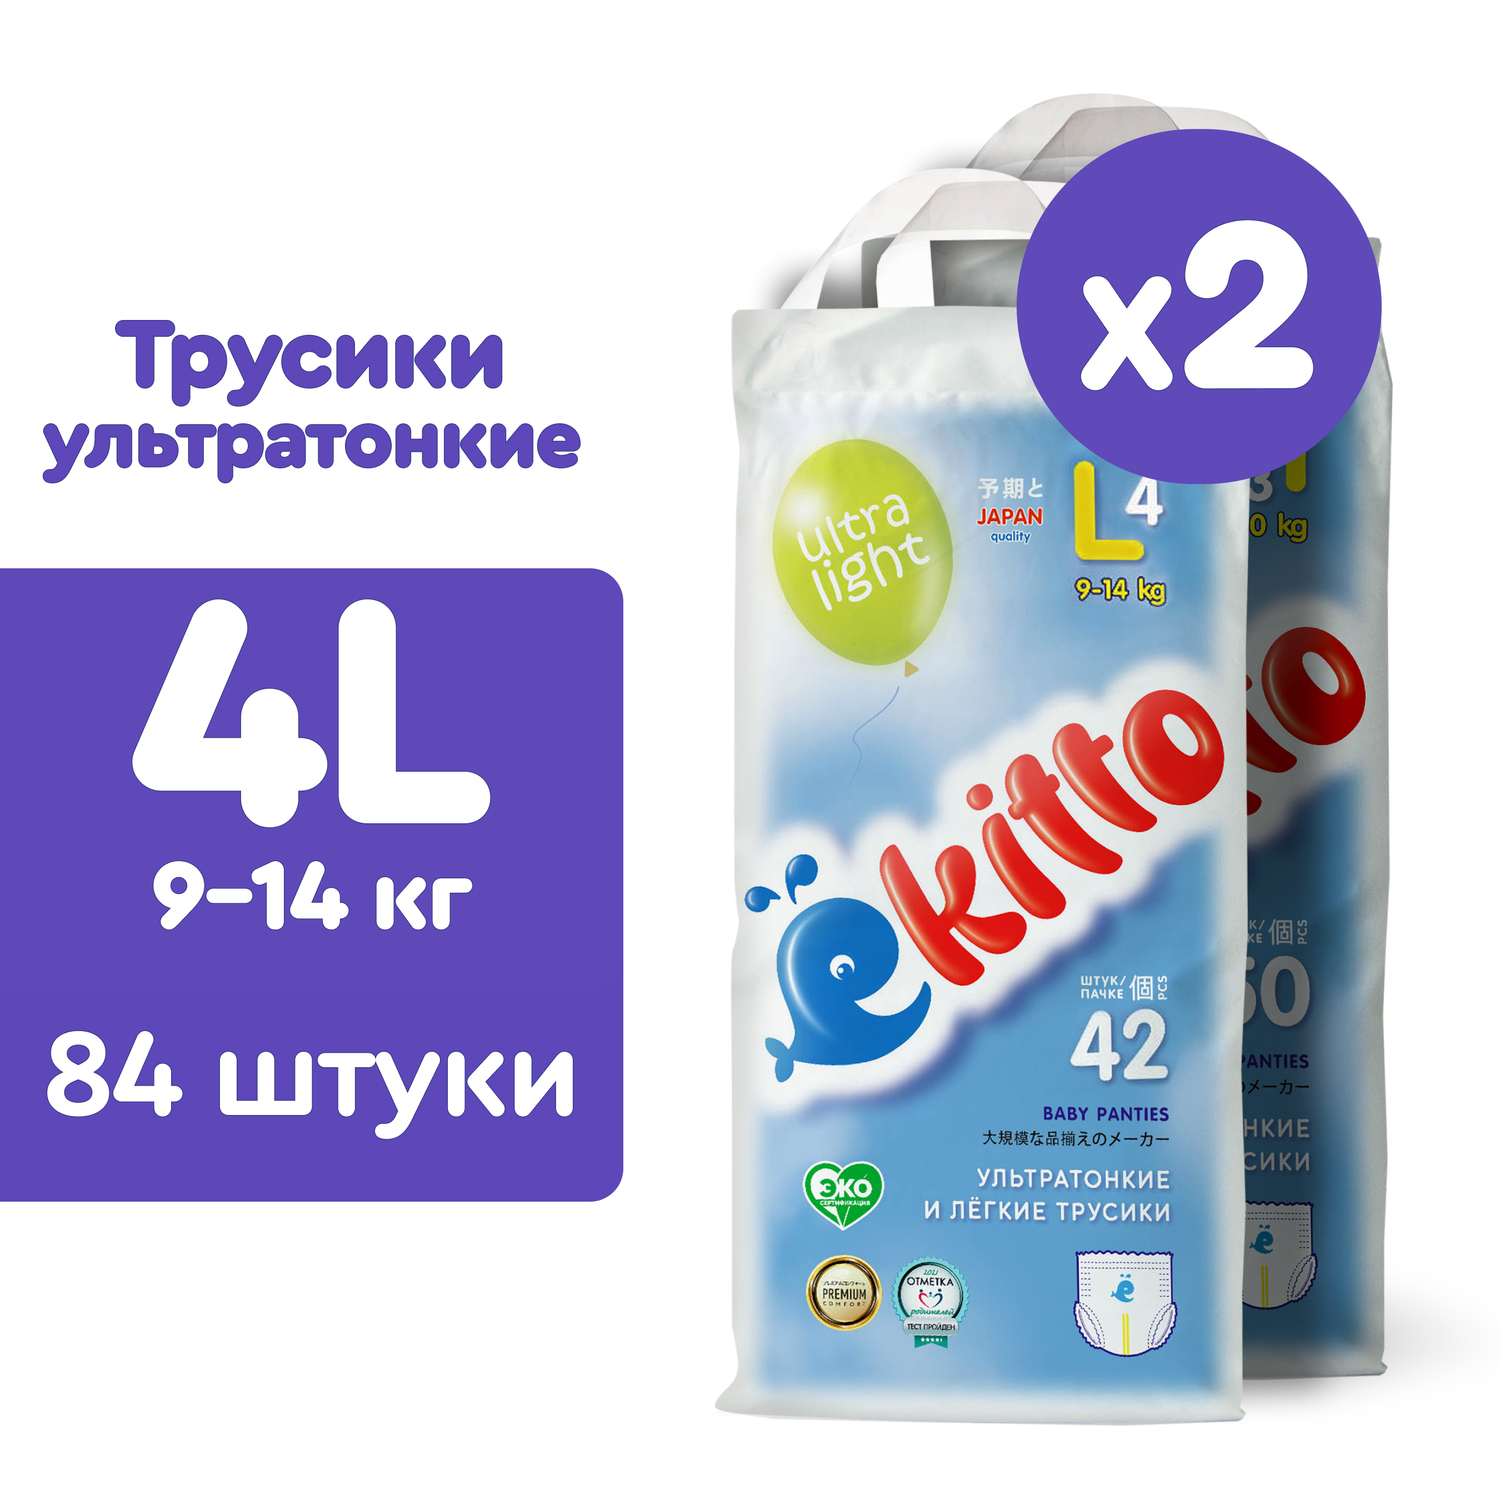 Подгузники-трусики Ekitto 4 размер L для детей от 9-14 кг 84 шт ультра-тонкие - фото 1